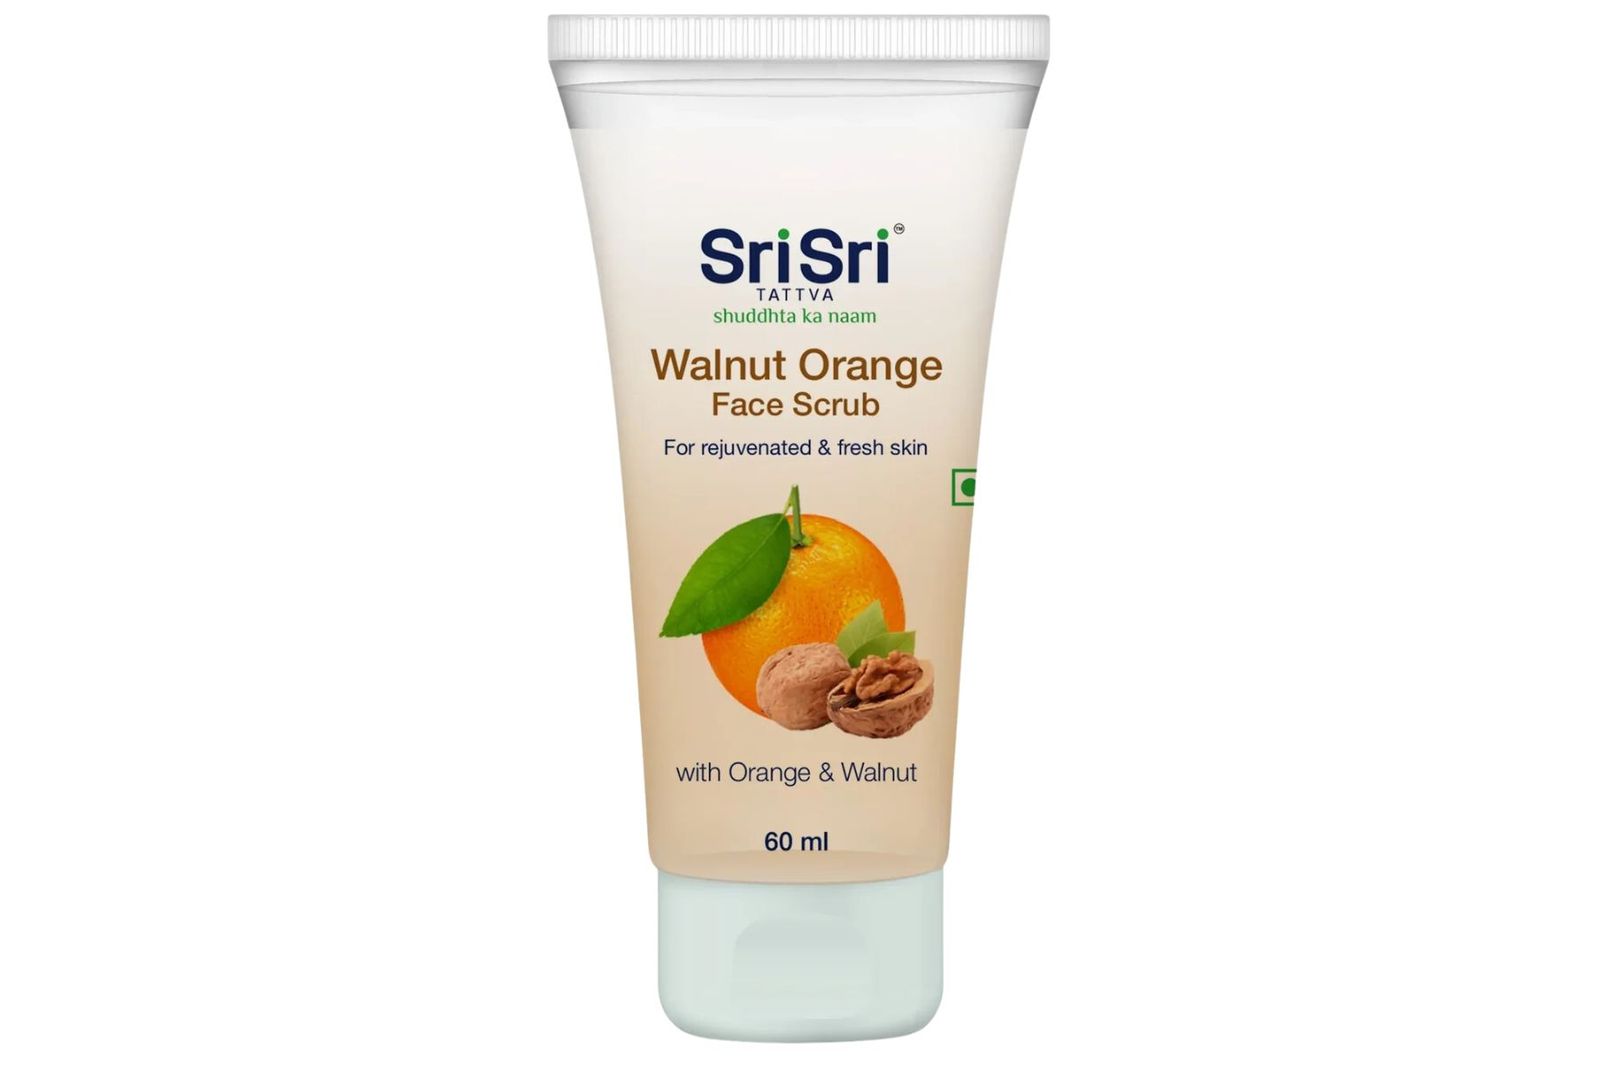 Sri Sri Tattva Walnut Orange Face Srub